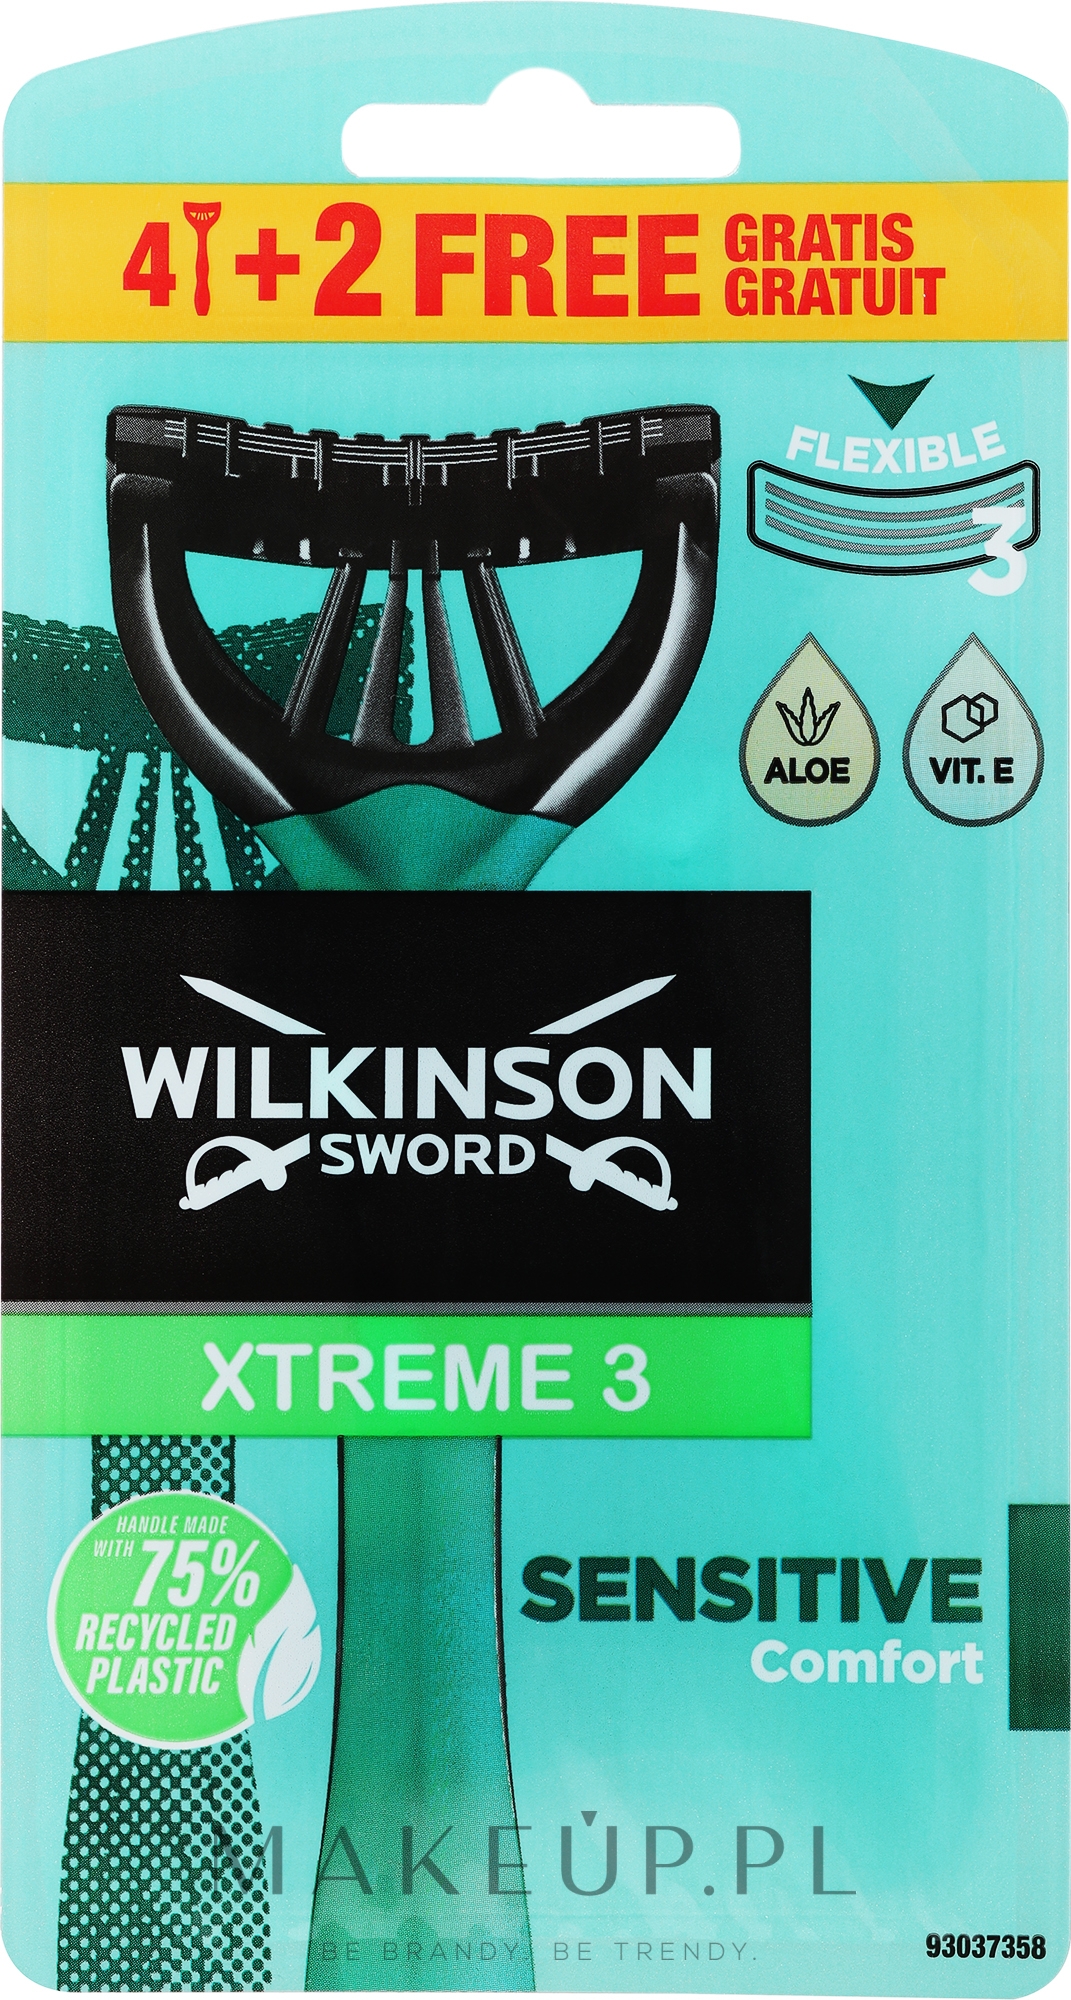 Jednorazowe maszynki do golenia, 4+2 szt. - Wilkinson Sword Xtreme 3 Sensitive — Zdjęcie 6 szt.